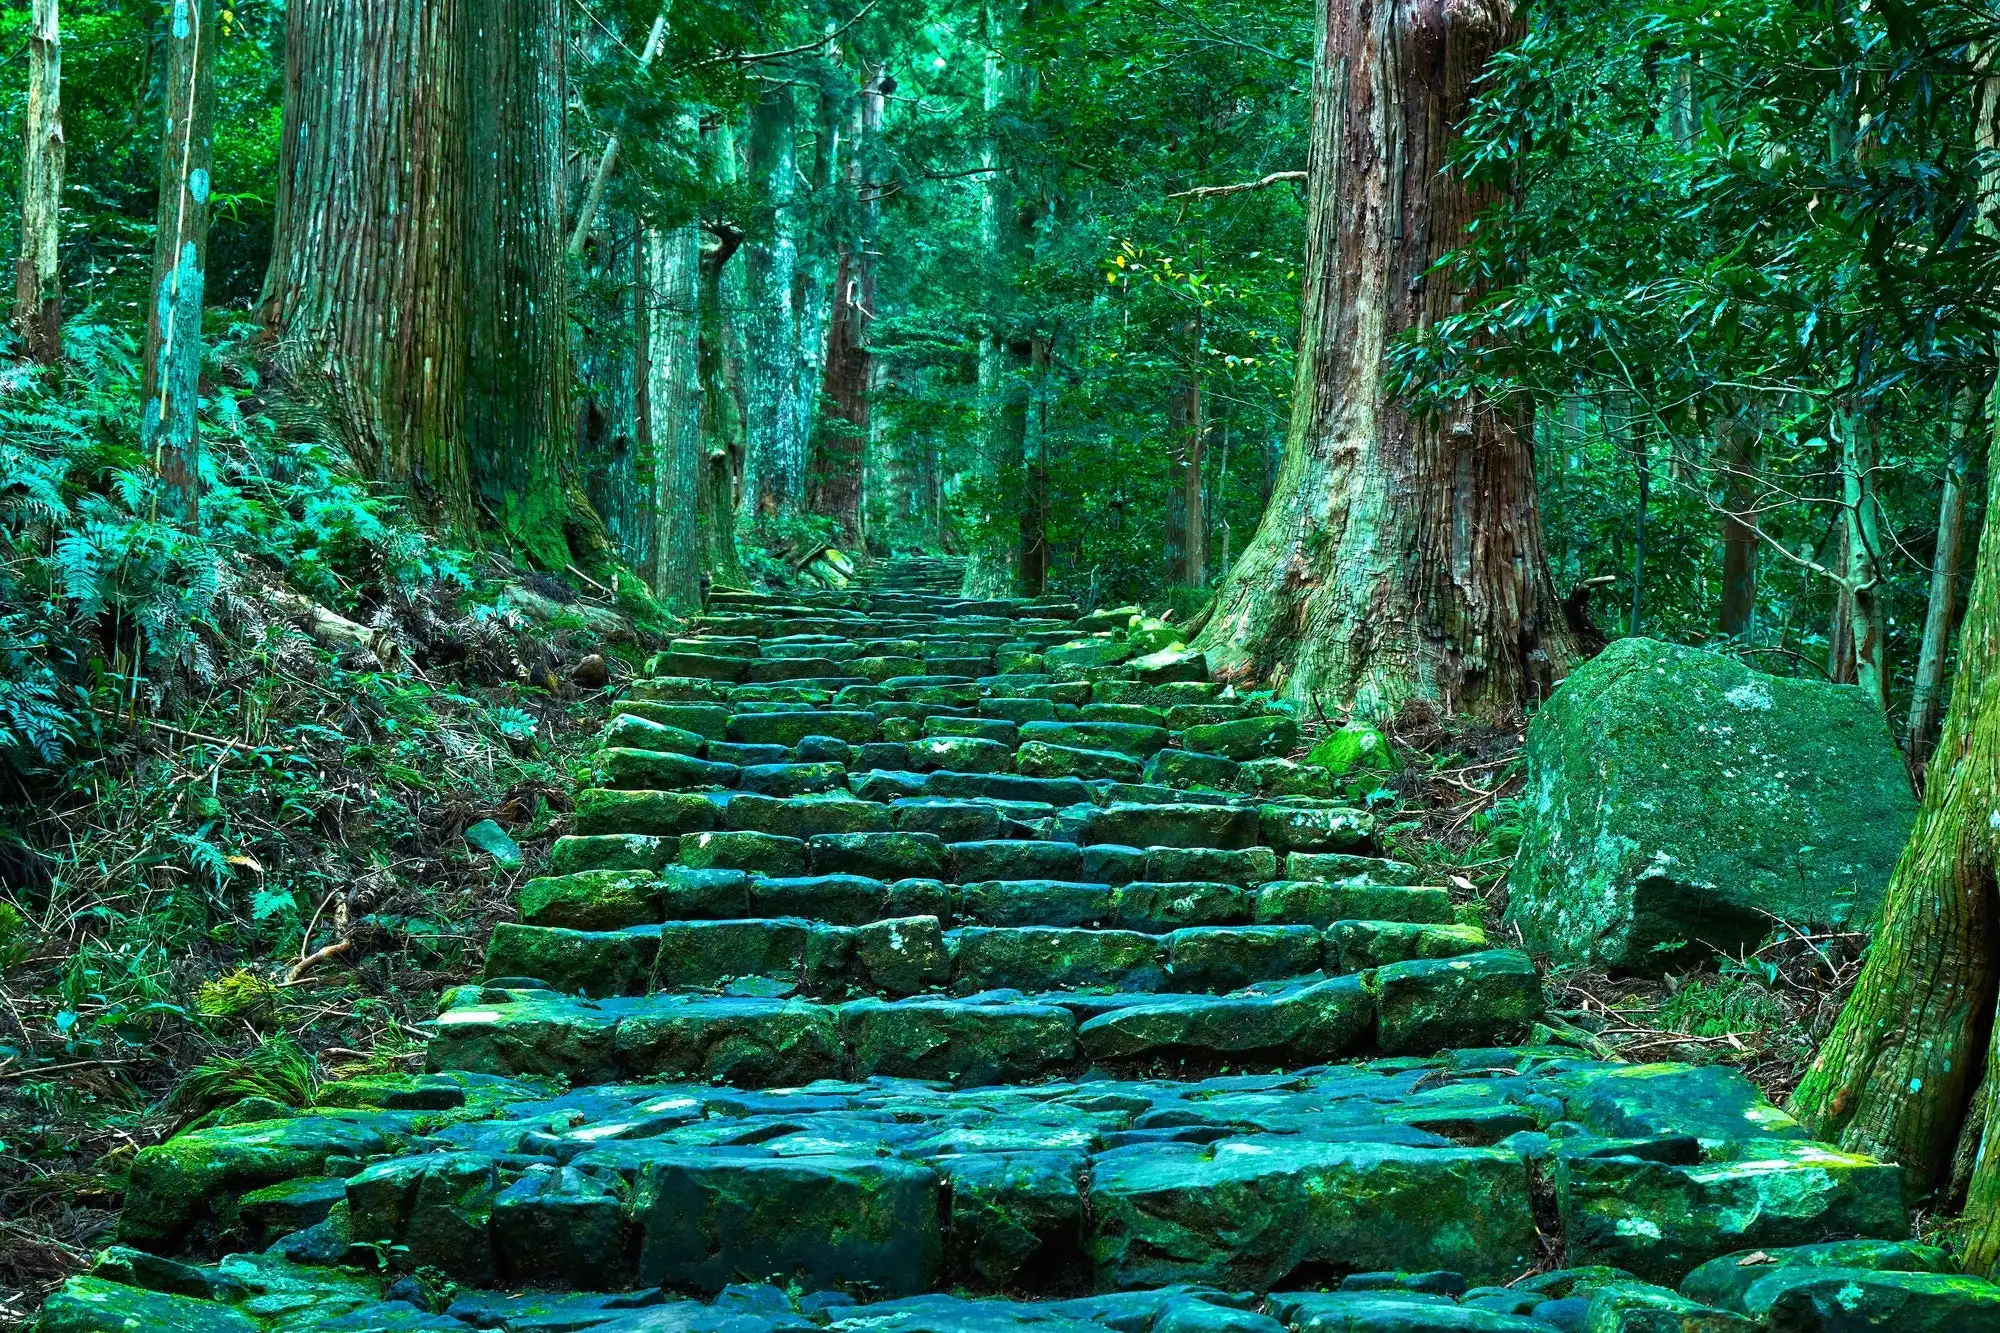 世界遺産 熊野古道 の自然の風景を歩こう 和歌山県の歴史あるパワースポットはインスタ映え間違いなしの石段や御神体の滝が盛りだくさん 観光 旅行 クールジャパンビデオ 日本の観光 旅行 グルメ 面白情報をまとめた動画キュレーションサイト Cool Japan